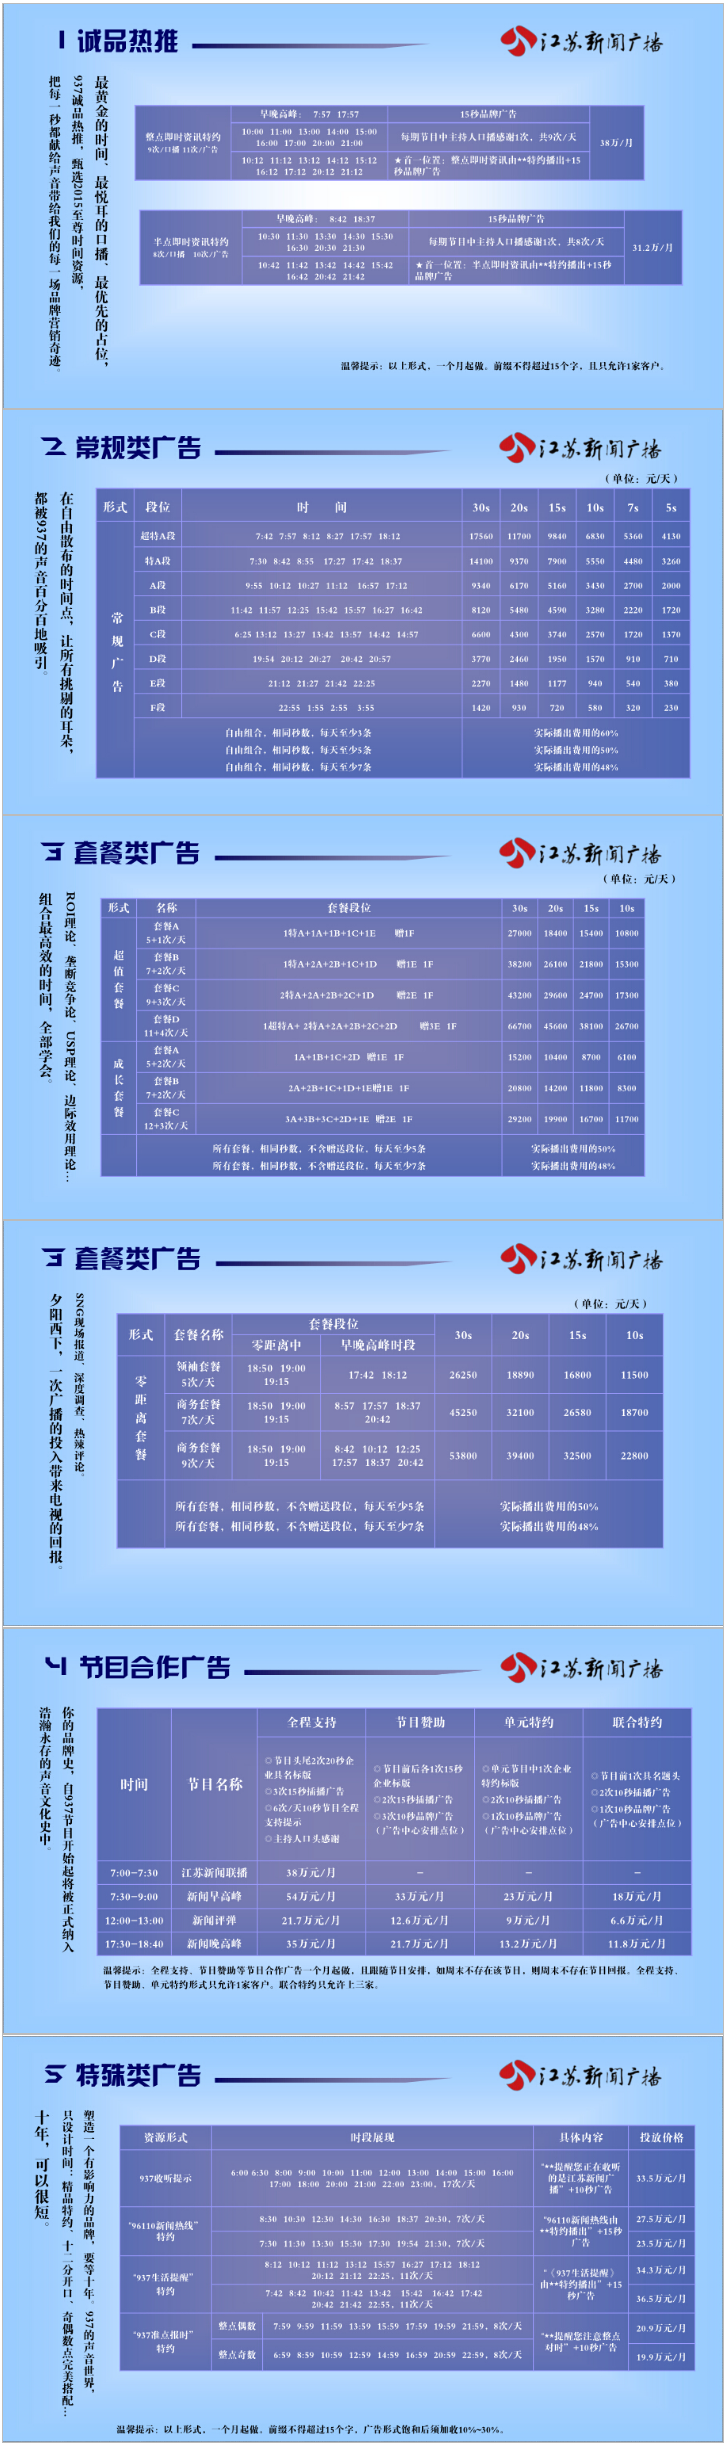 2015江苏人民广播电台新闻广播FM93.7广告报价表.png